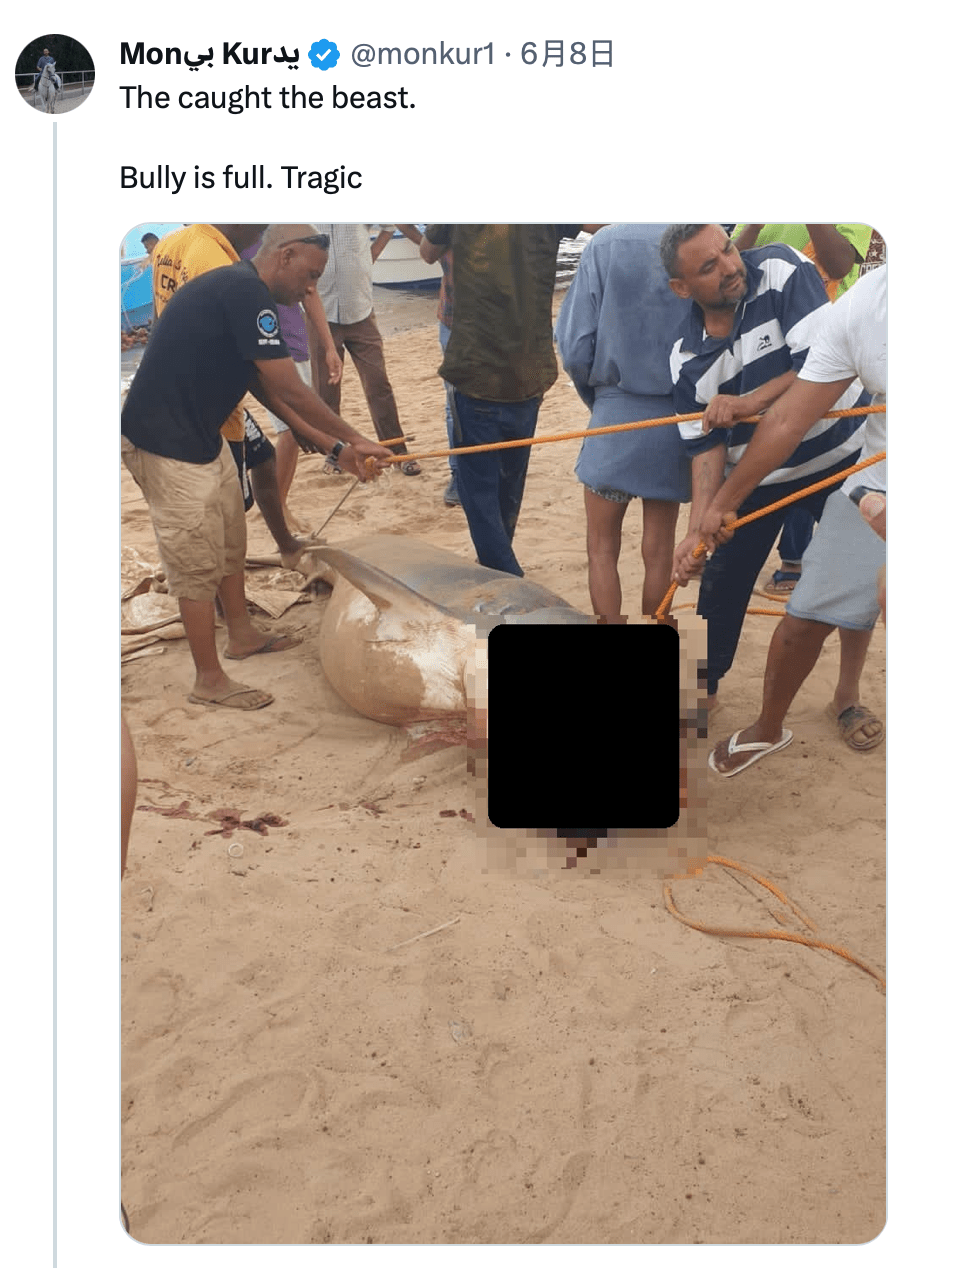 虎鲨被捕的消息引起民众关注。